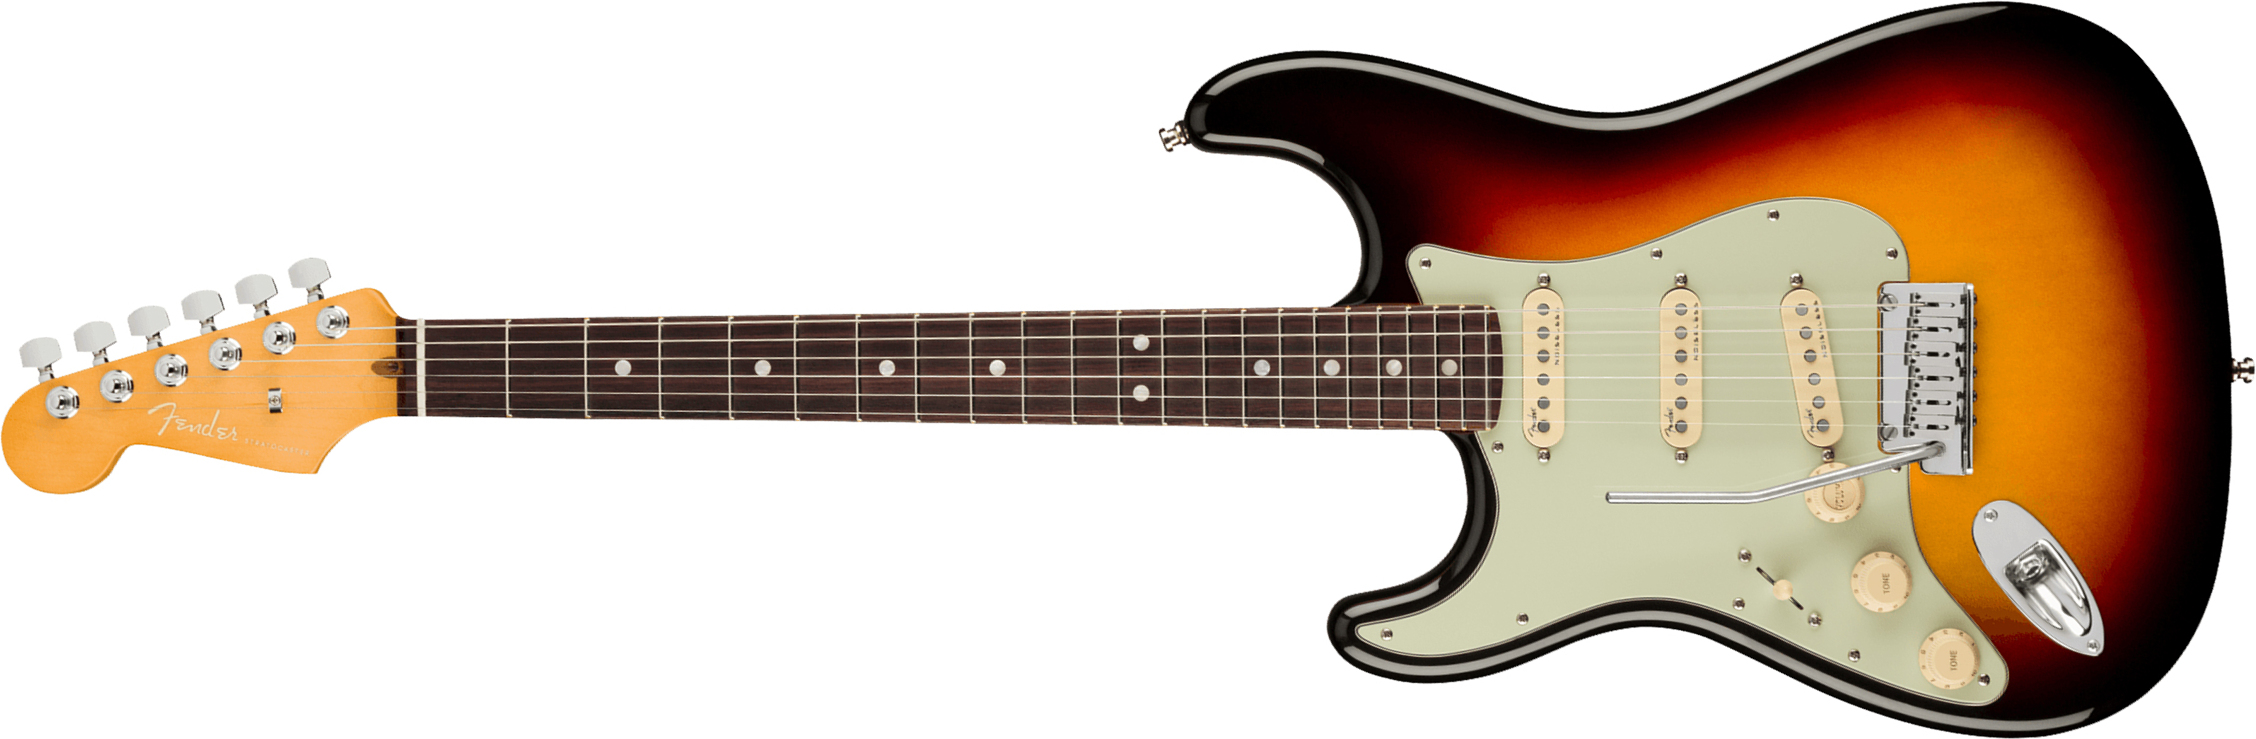 Fender Strat American Ultra Lh Gaucher Usa Rw +etui - Ultraburst - Linkshandige elektrische gitaar - Main picture